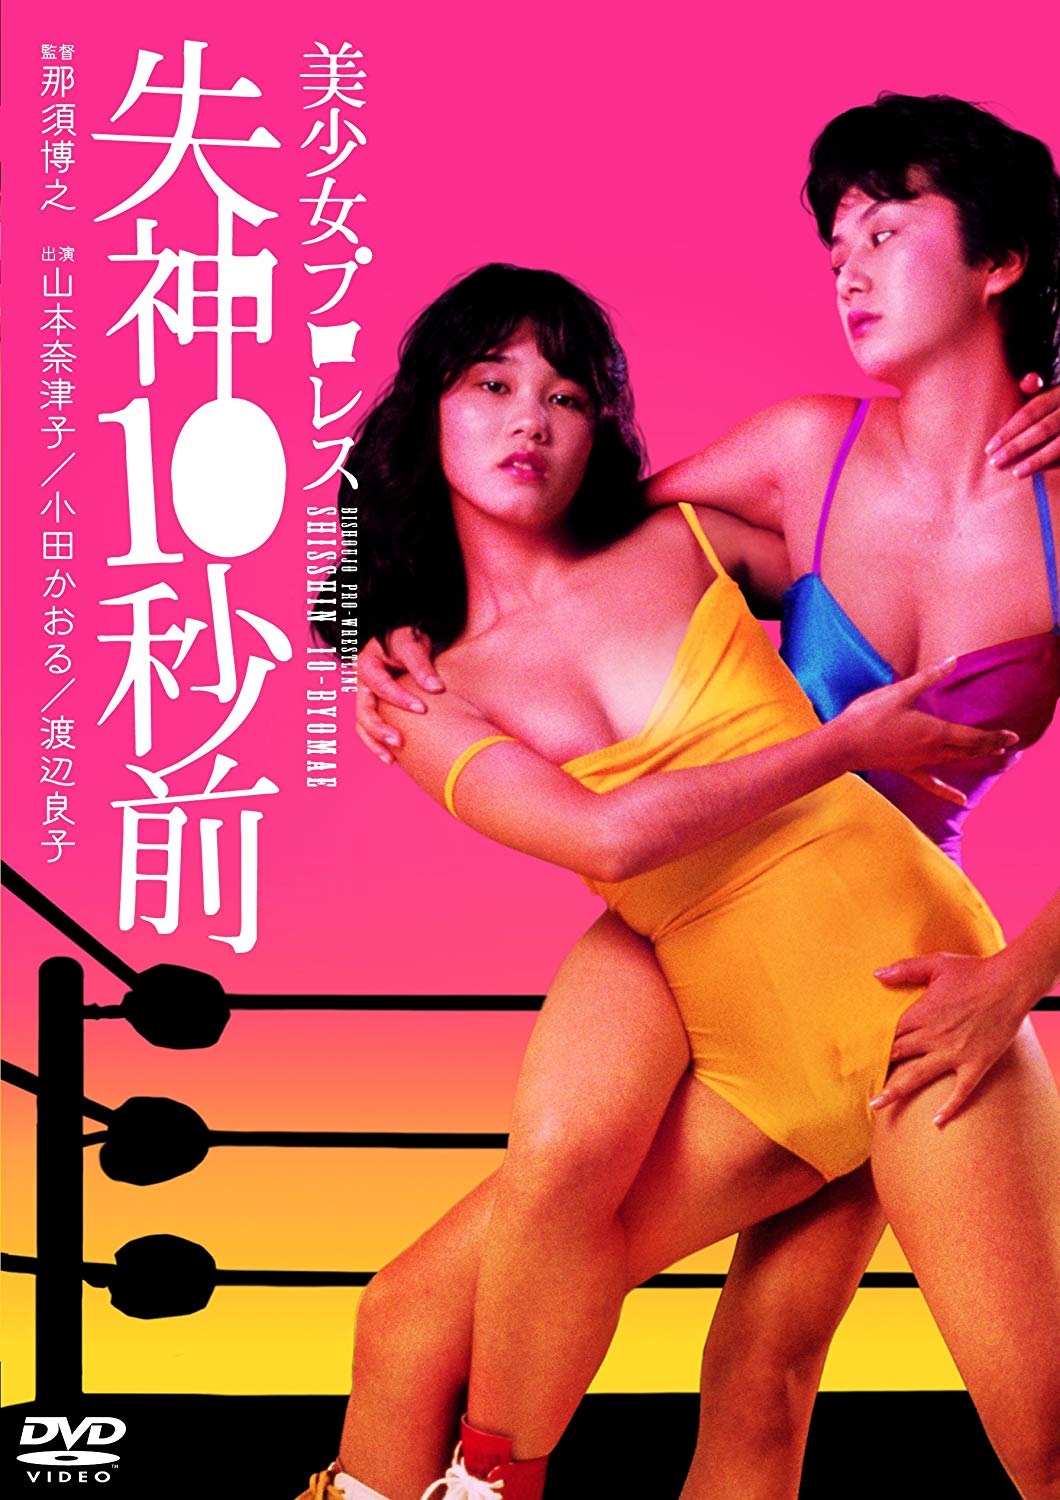 Bishôjo puroresu: Shisshin 10-byo mae (1984) with English Subtitles on DVD on DVD